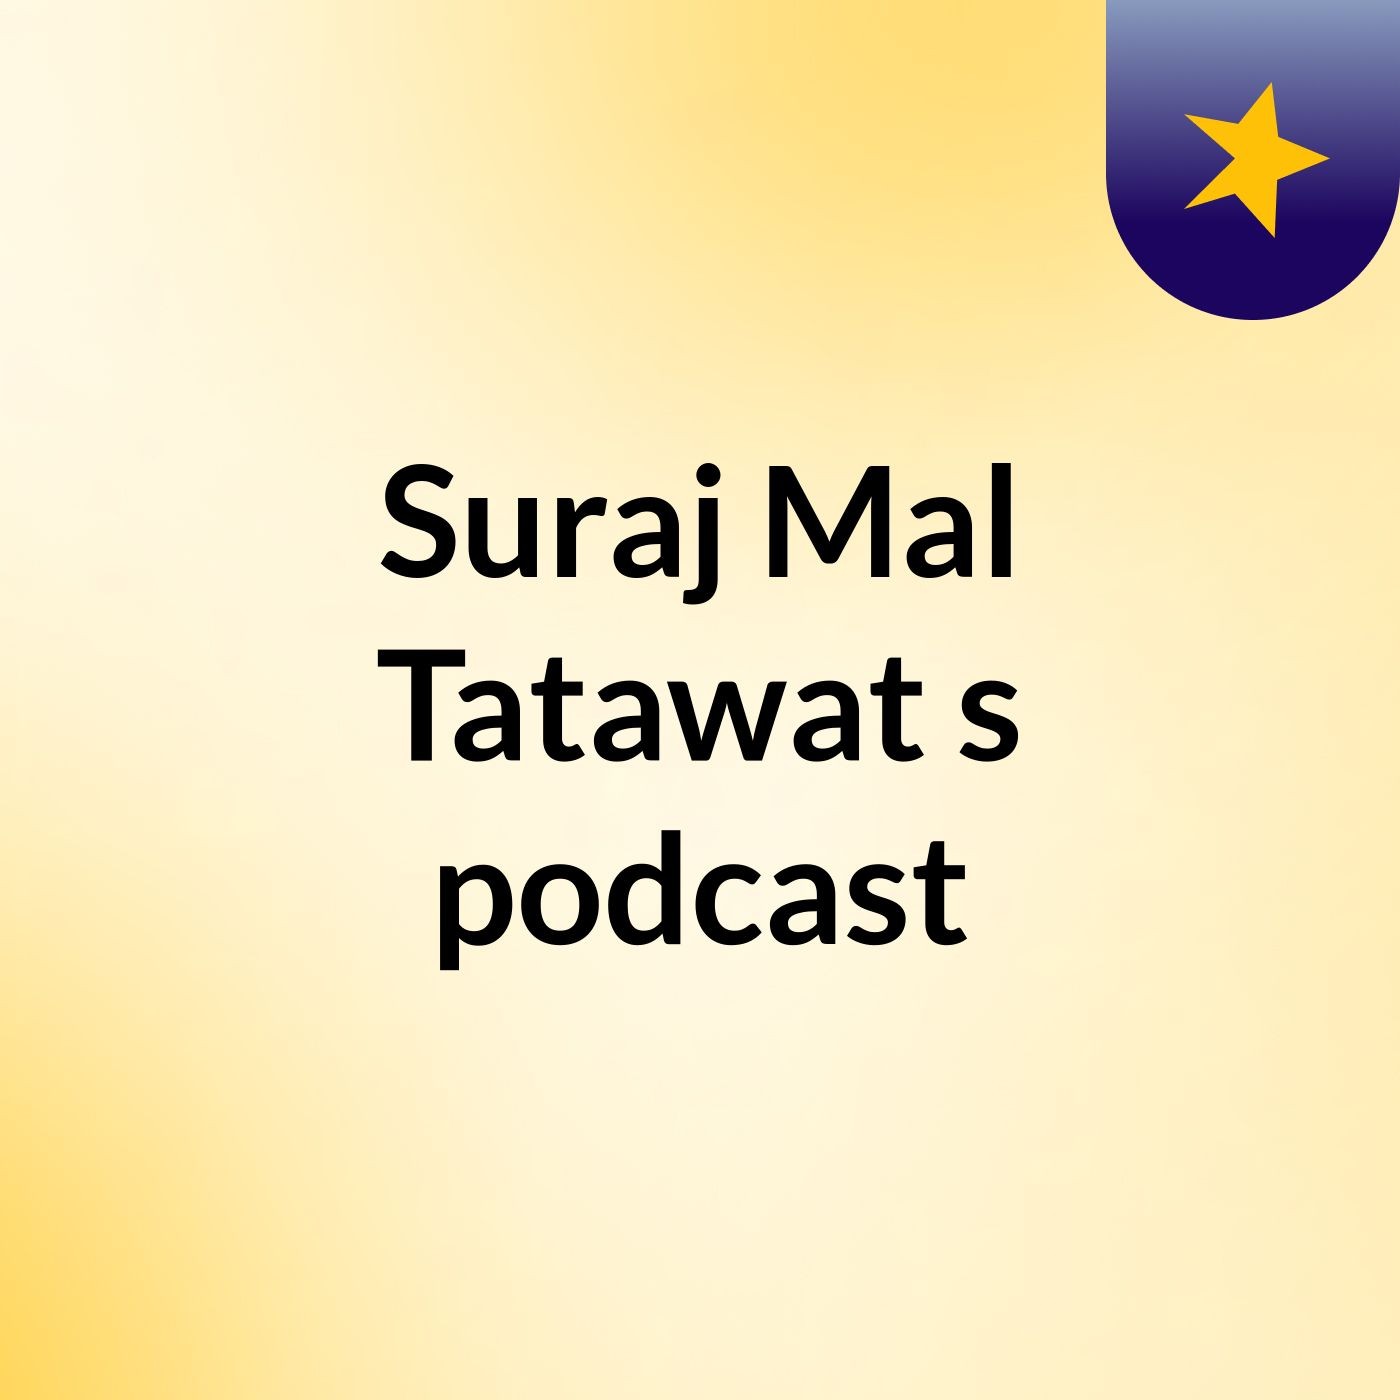 Suraj Mal Tatawat's podcast